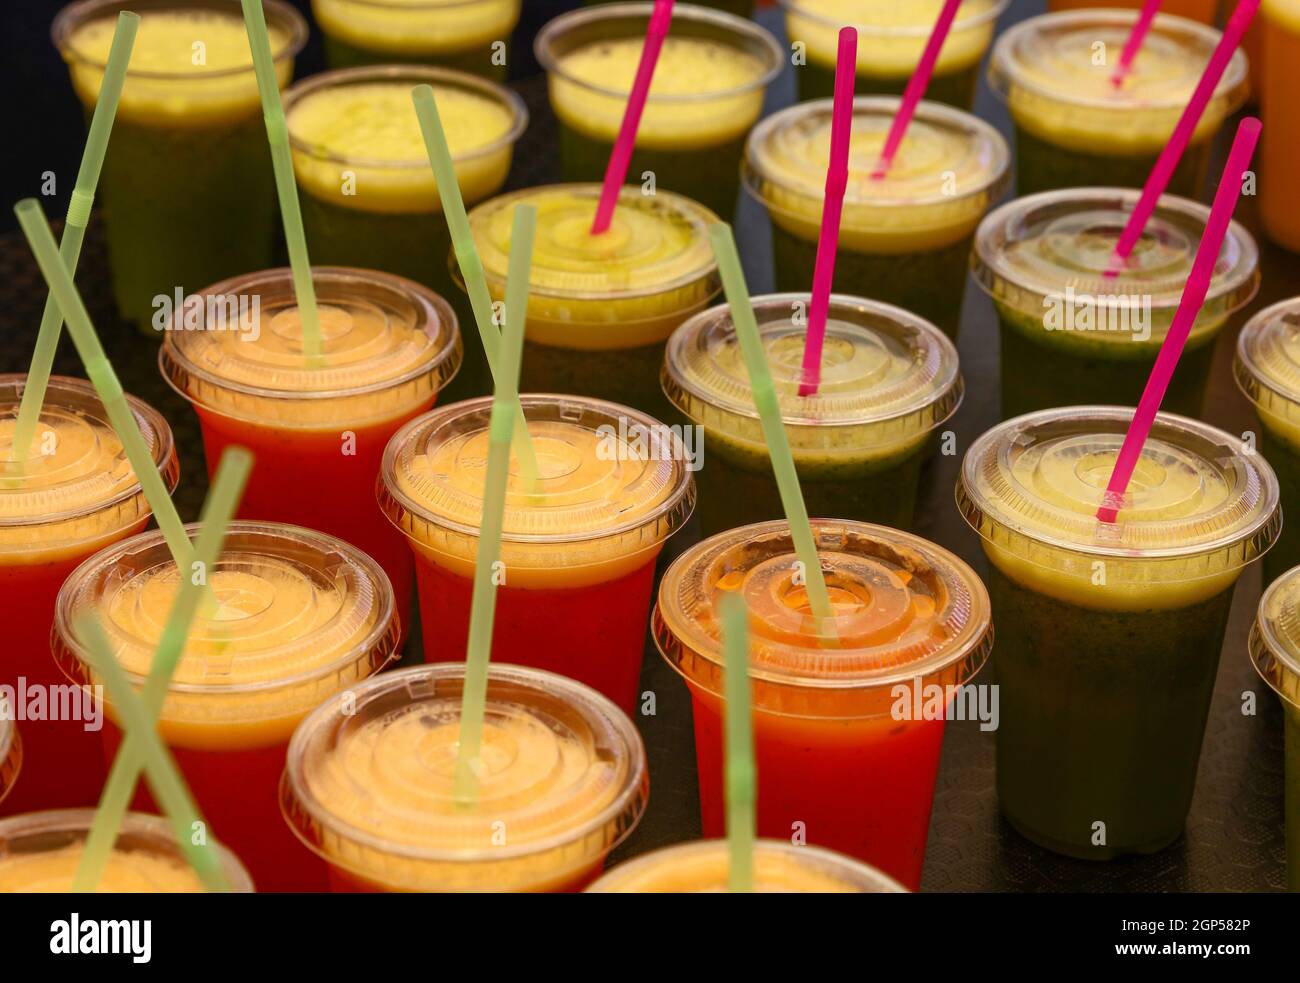 Gros plan de nombreux verres en plastique de jus de fruits et de légumes  frais et smoothies avec pailles à boire à l'exposition de détail, vue en  grand angle Photo Stock -